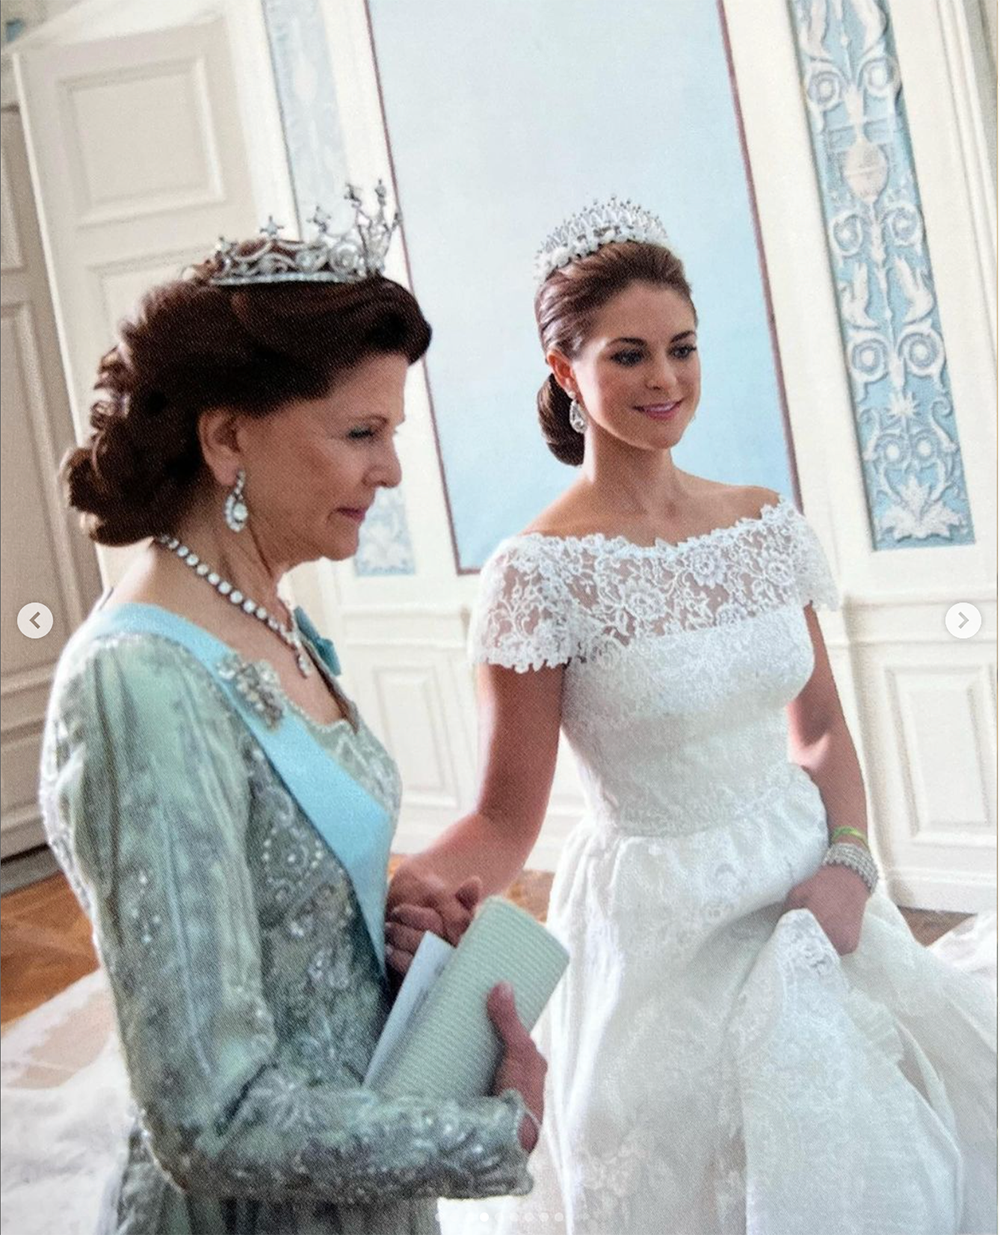 Drottning Silvia håller sin dotter prinsessan Madeleine i handen på hennes bröllopsdag. 